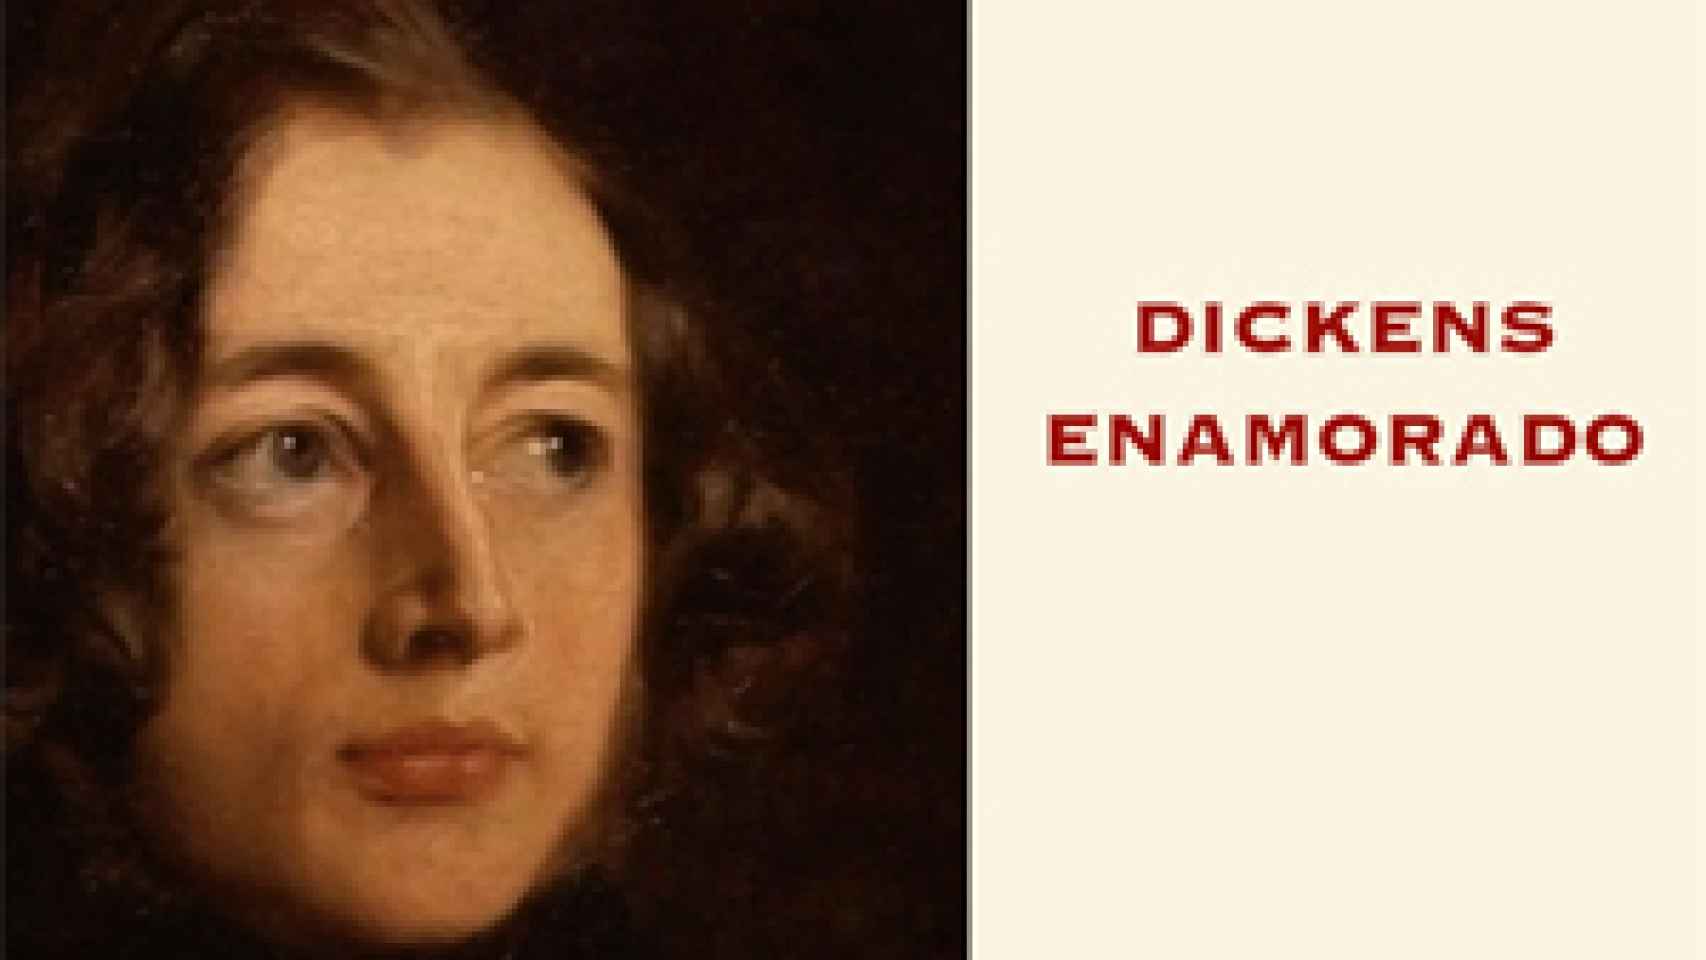 Image: Dickens enamorado